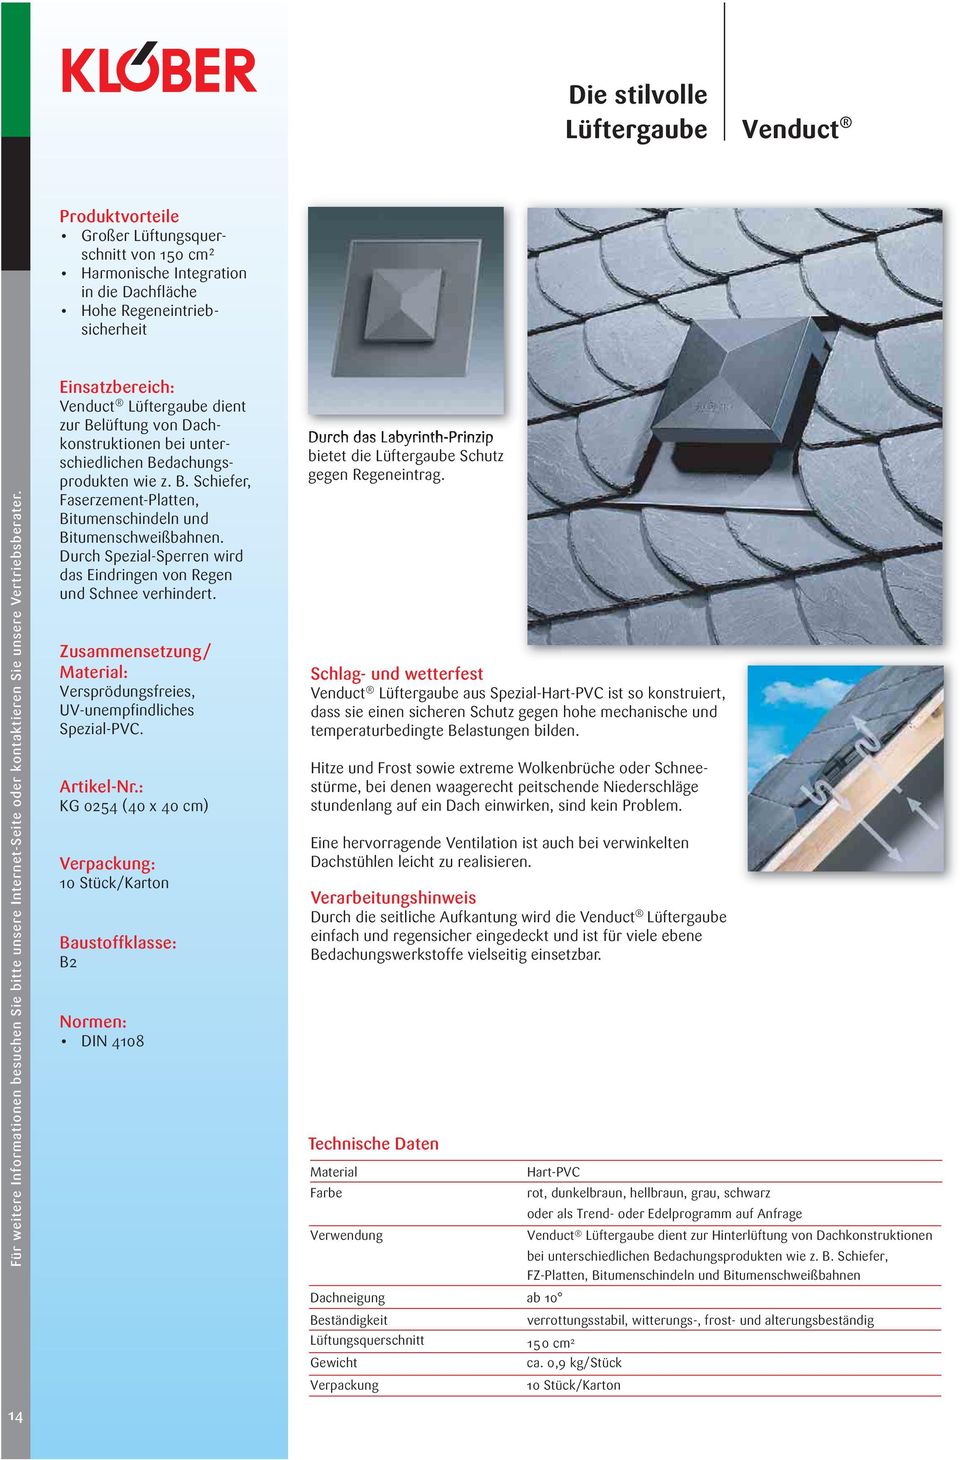 Einsatzbereich: Venduct Lüftergaube dient zur Belüftung von Dachkonstruktionen bei unterschiedlichen Bedachungsprodukten wie z. B. Schiefer, Faserzement-Platten, Bitumenschindeln und Bitumenschweißbahnen.